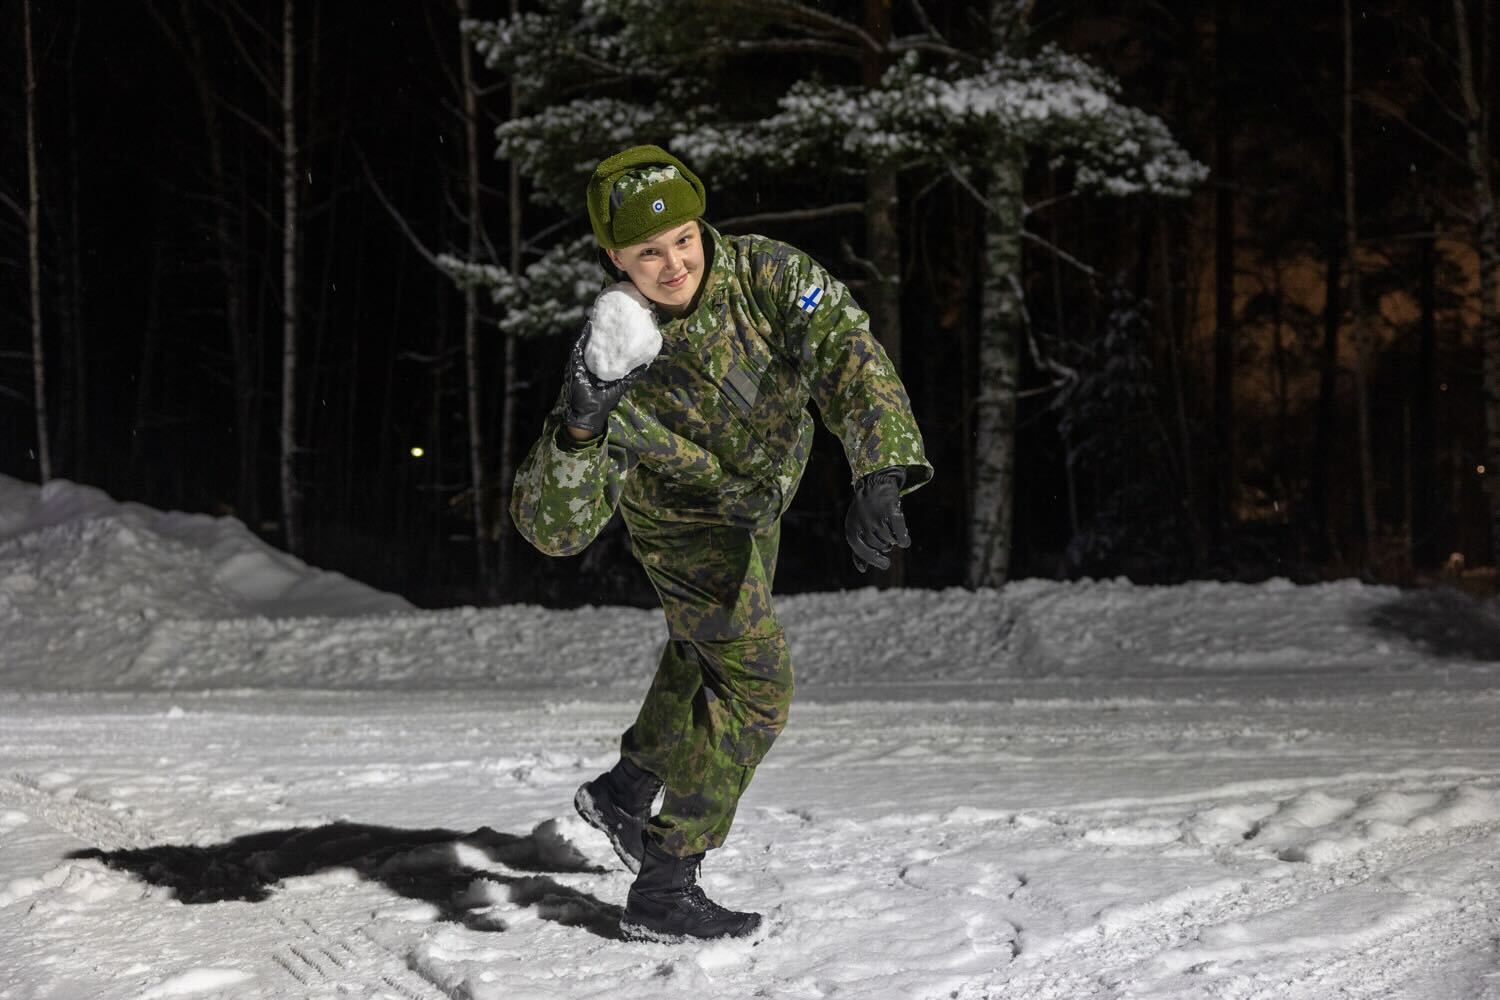 Kuvassa Oona Viljanen on heittämässä lumipalloa kuten heittäisi kuulaa kuulantyöntäjänä.